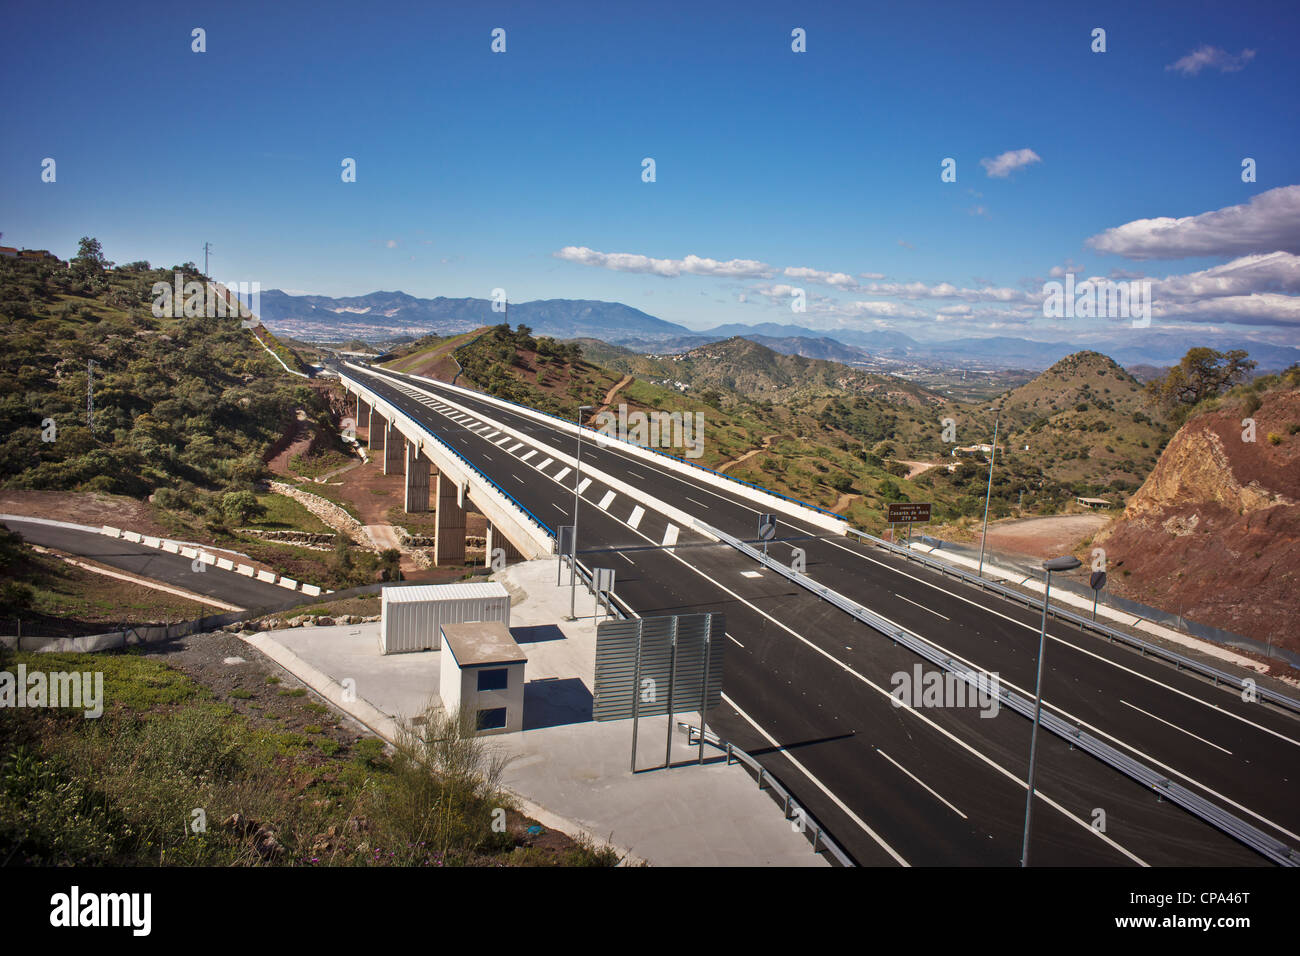 Nuova autostrada AUTOPISTA malaga costa del sol Spagna meridionale della penisola iberica ANDALUCIA vacanze sole BUONE CONDIZIONI METEOROLOGICHE Foto Stock